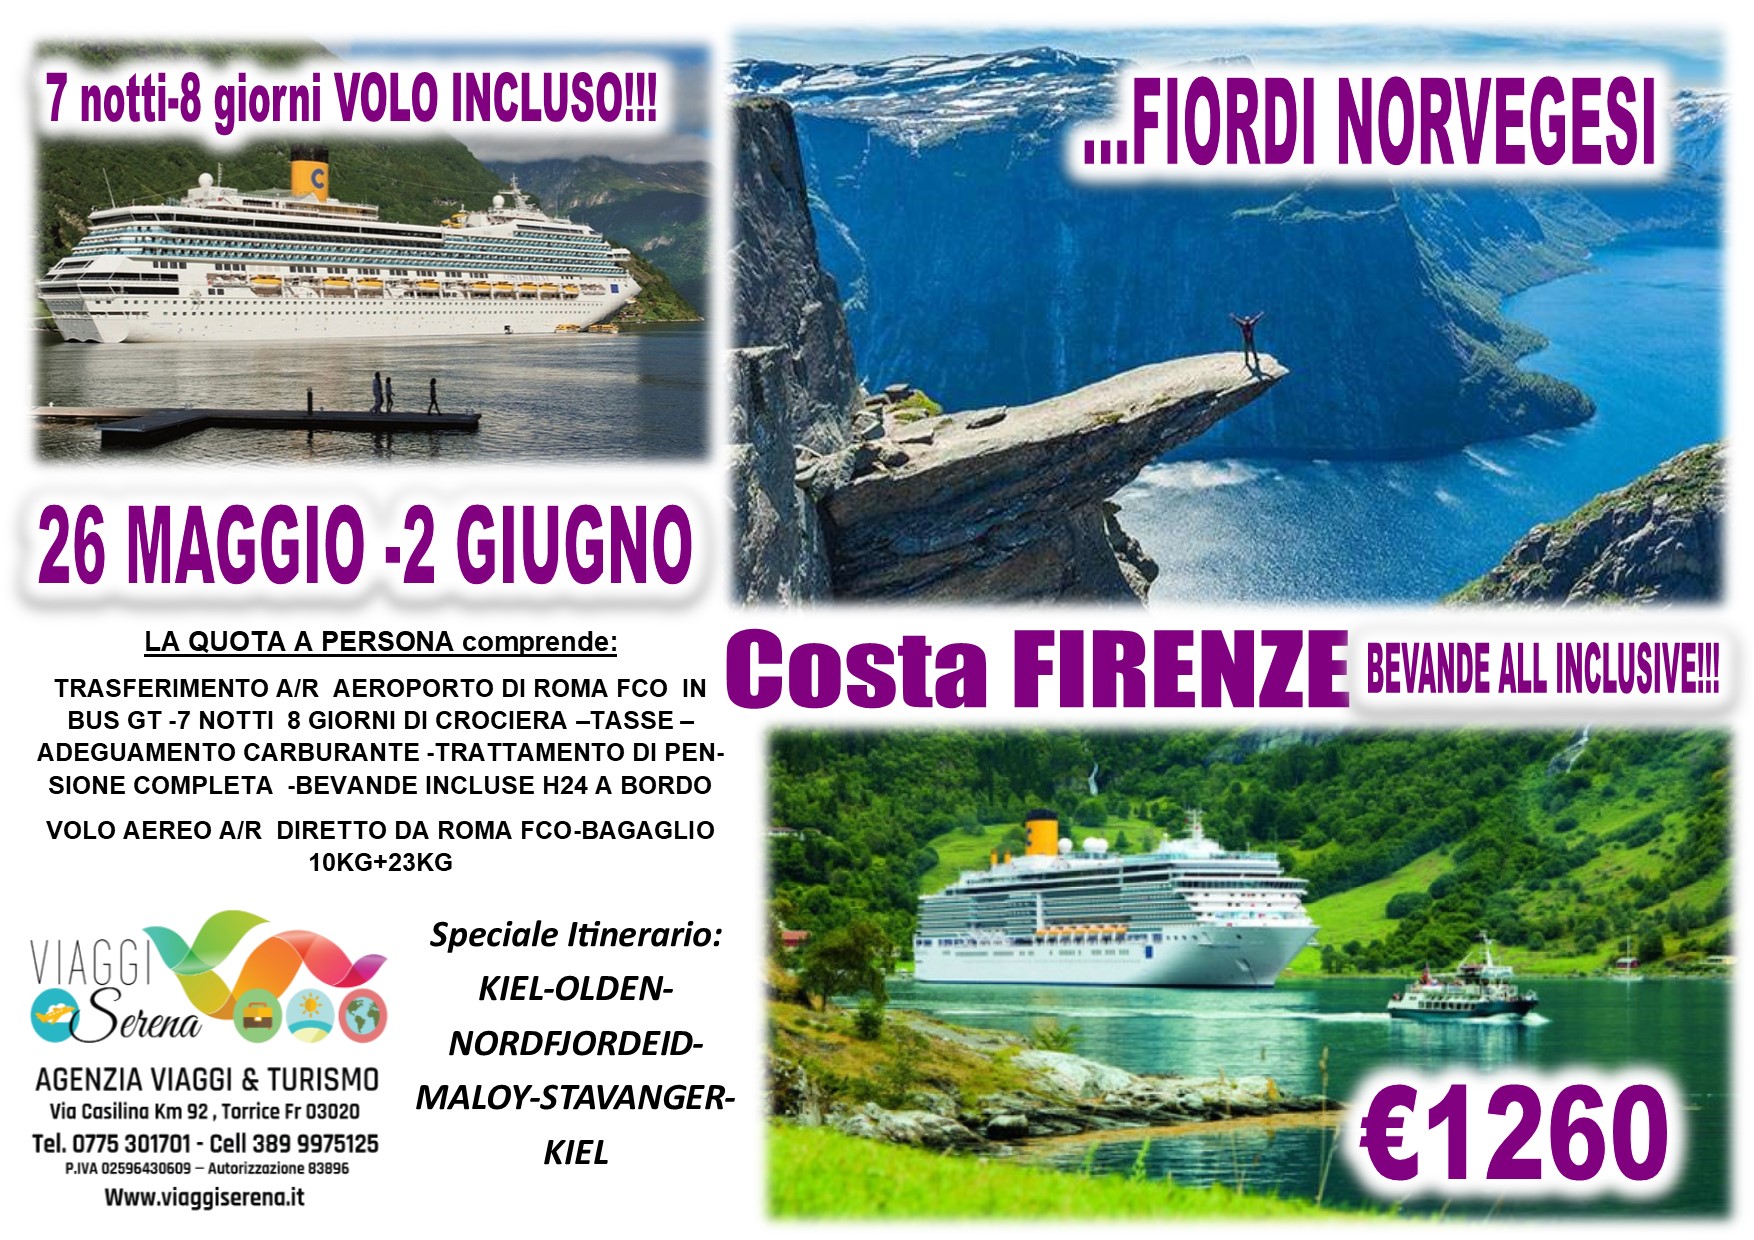 Viaggi di Gruppo: Crociera “Costa Firenze-Nave Nuova” FIORDI NORVEGESI  26 Maggio-2 Giugno € 1260,00